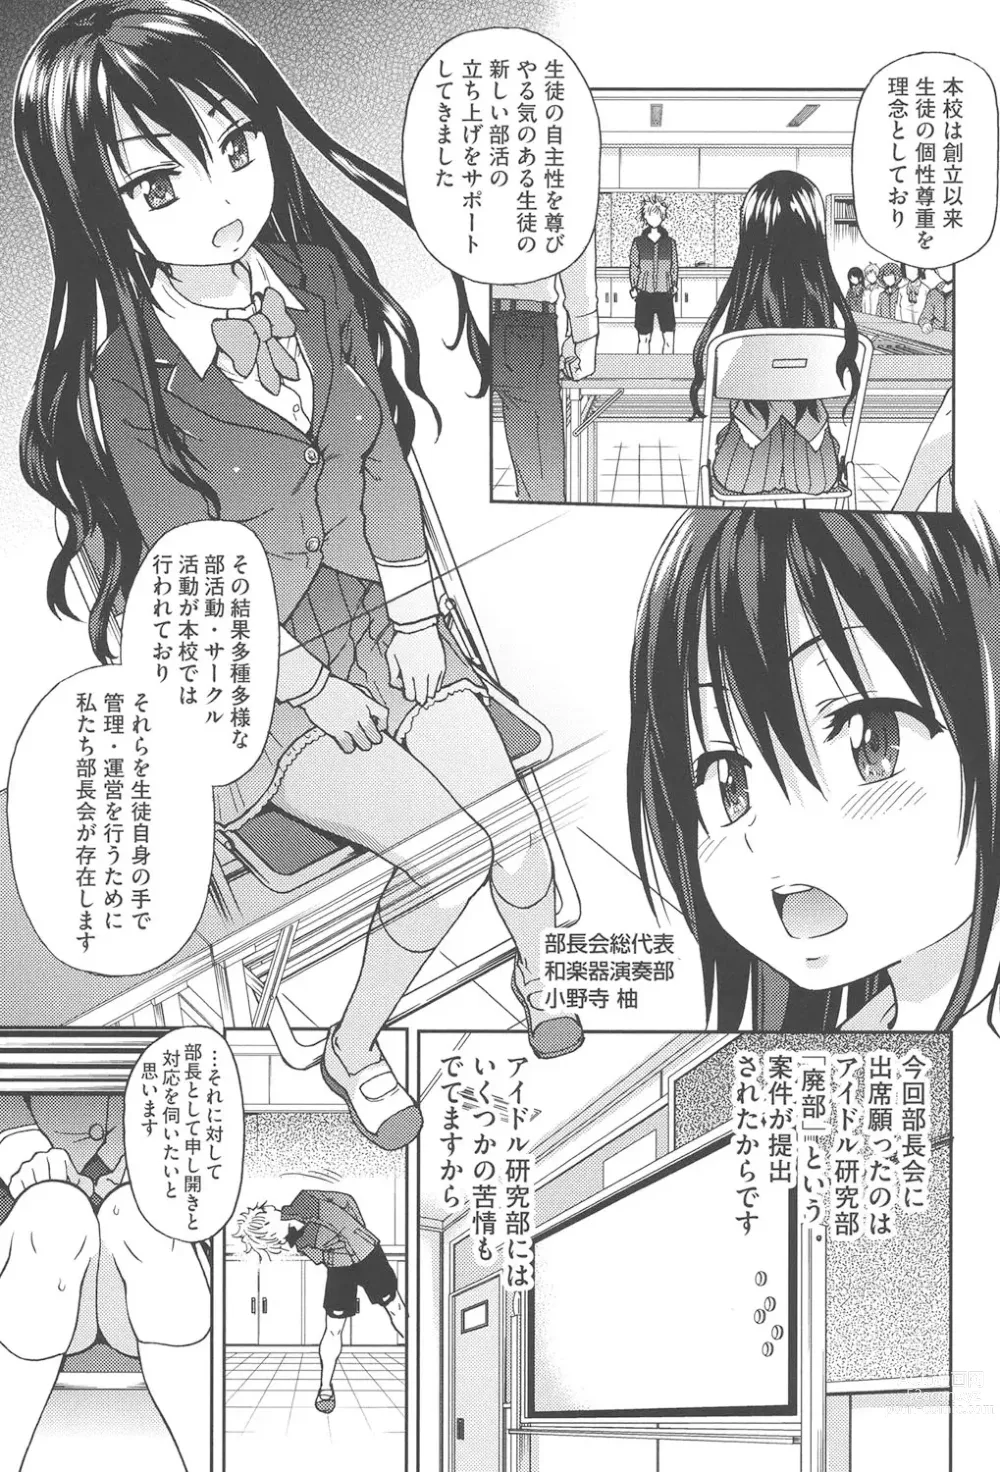 Page 10 of manga Aibuka!